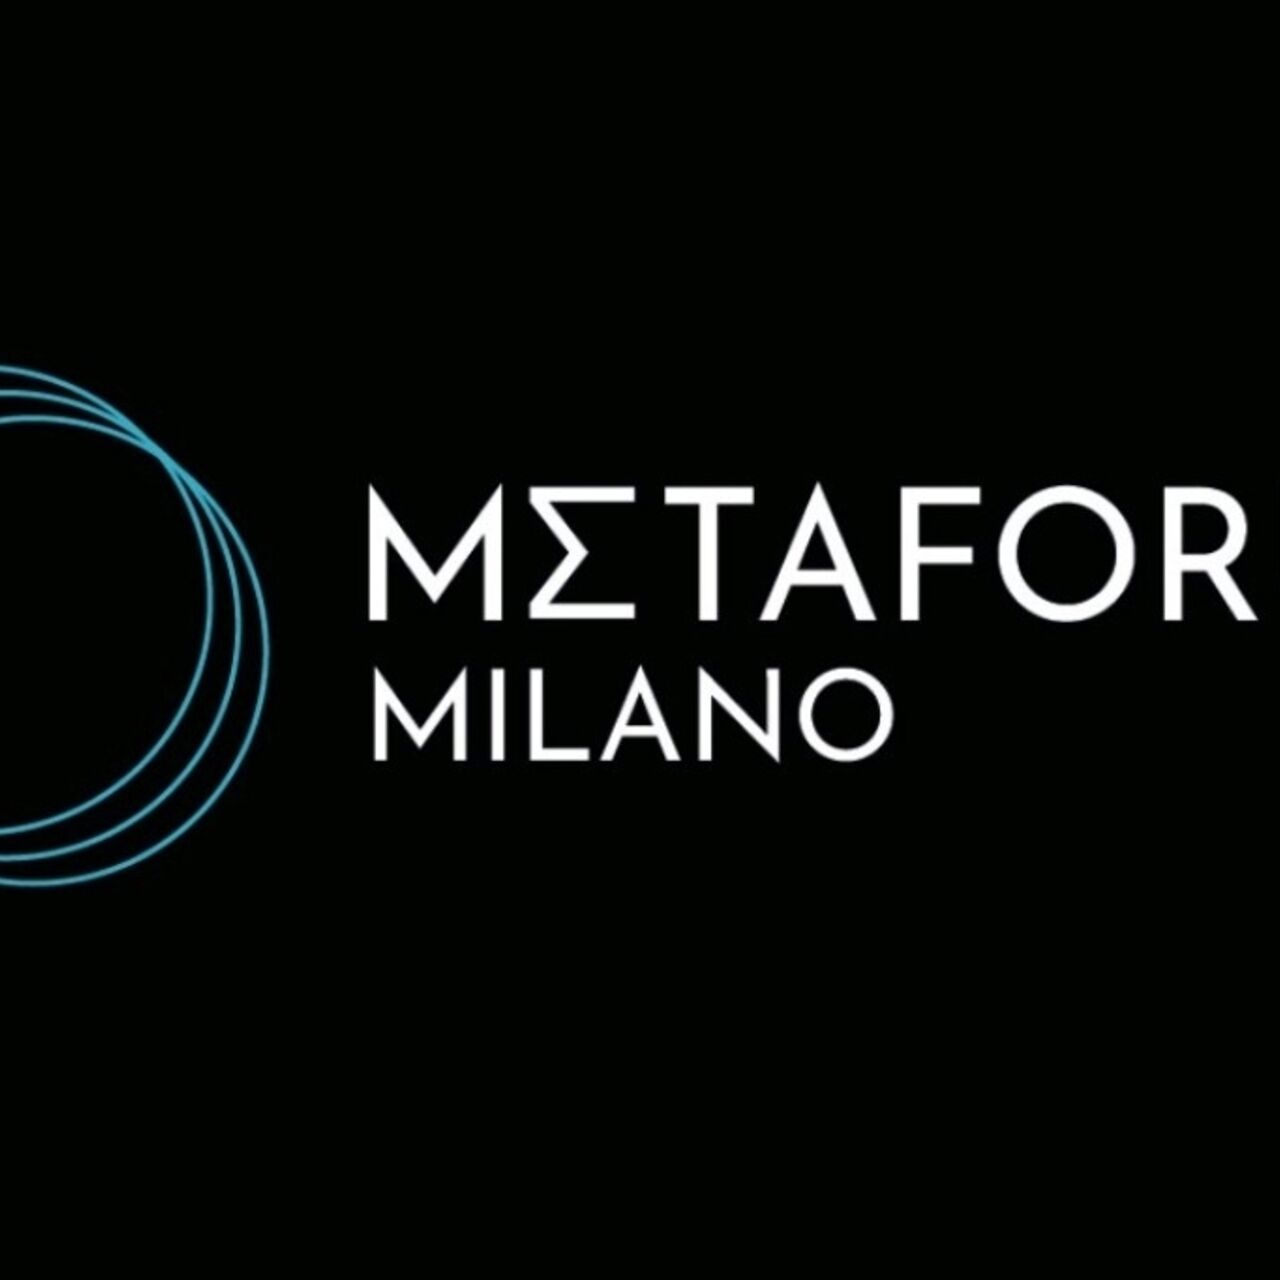 Metaforum: logo Metaforum Milano